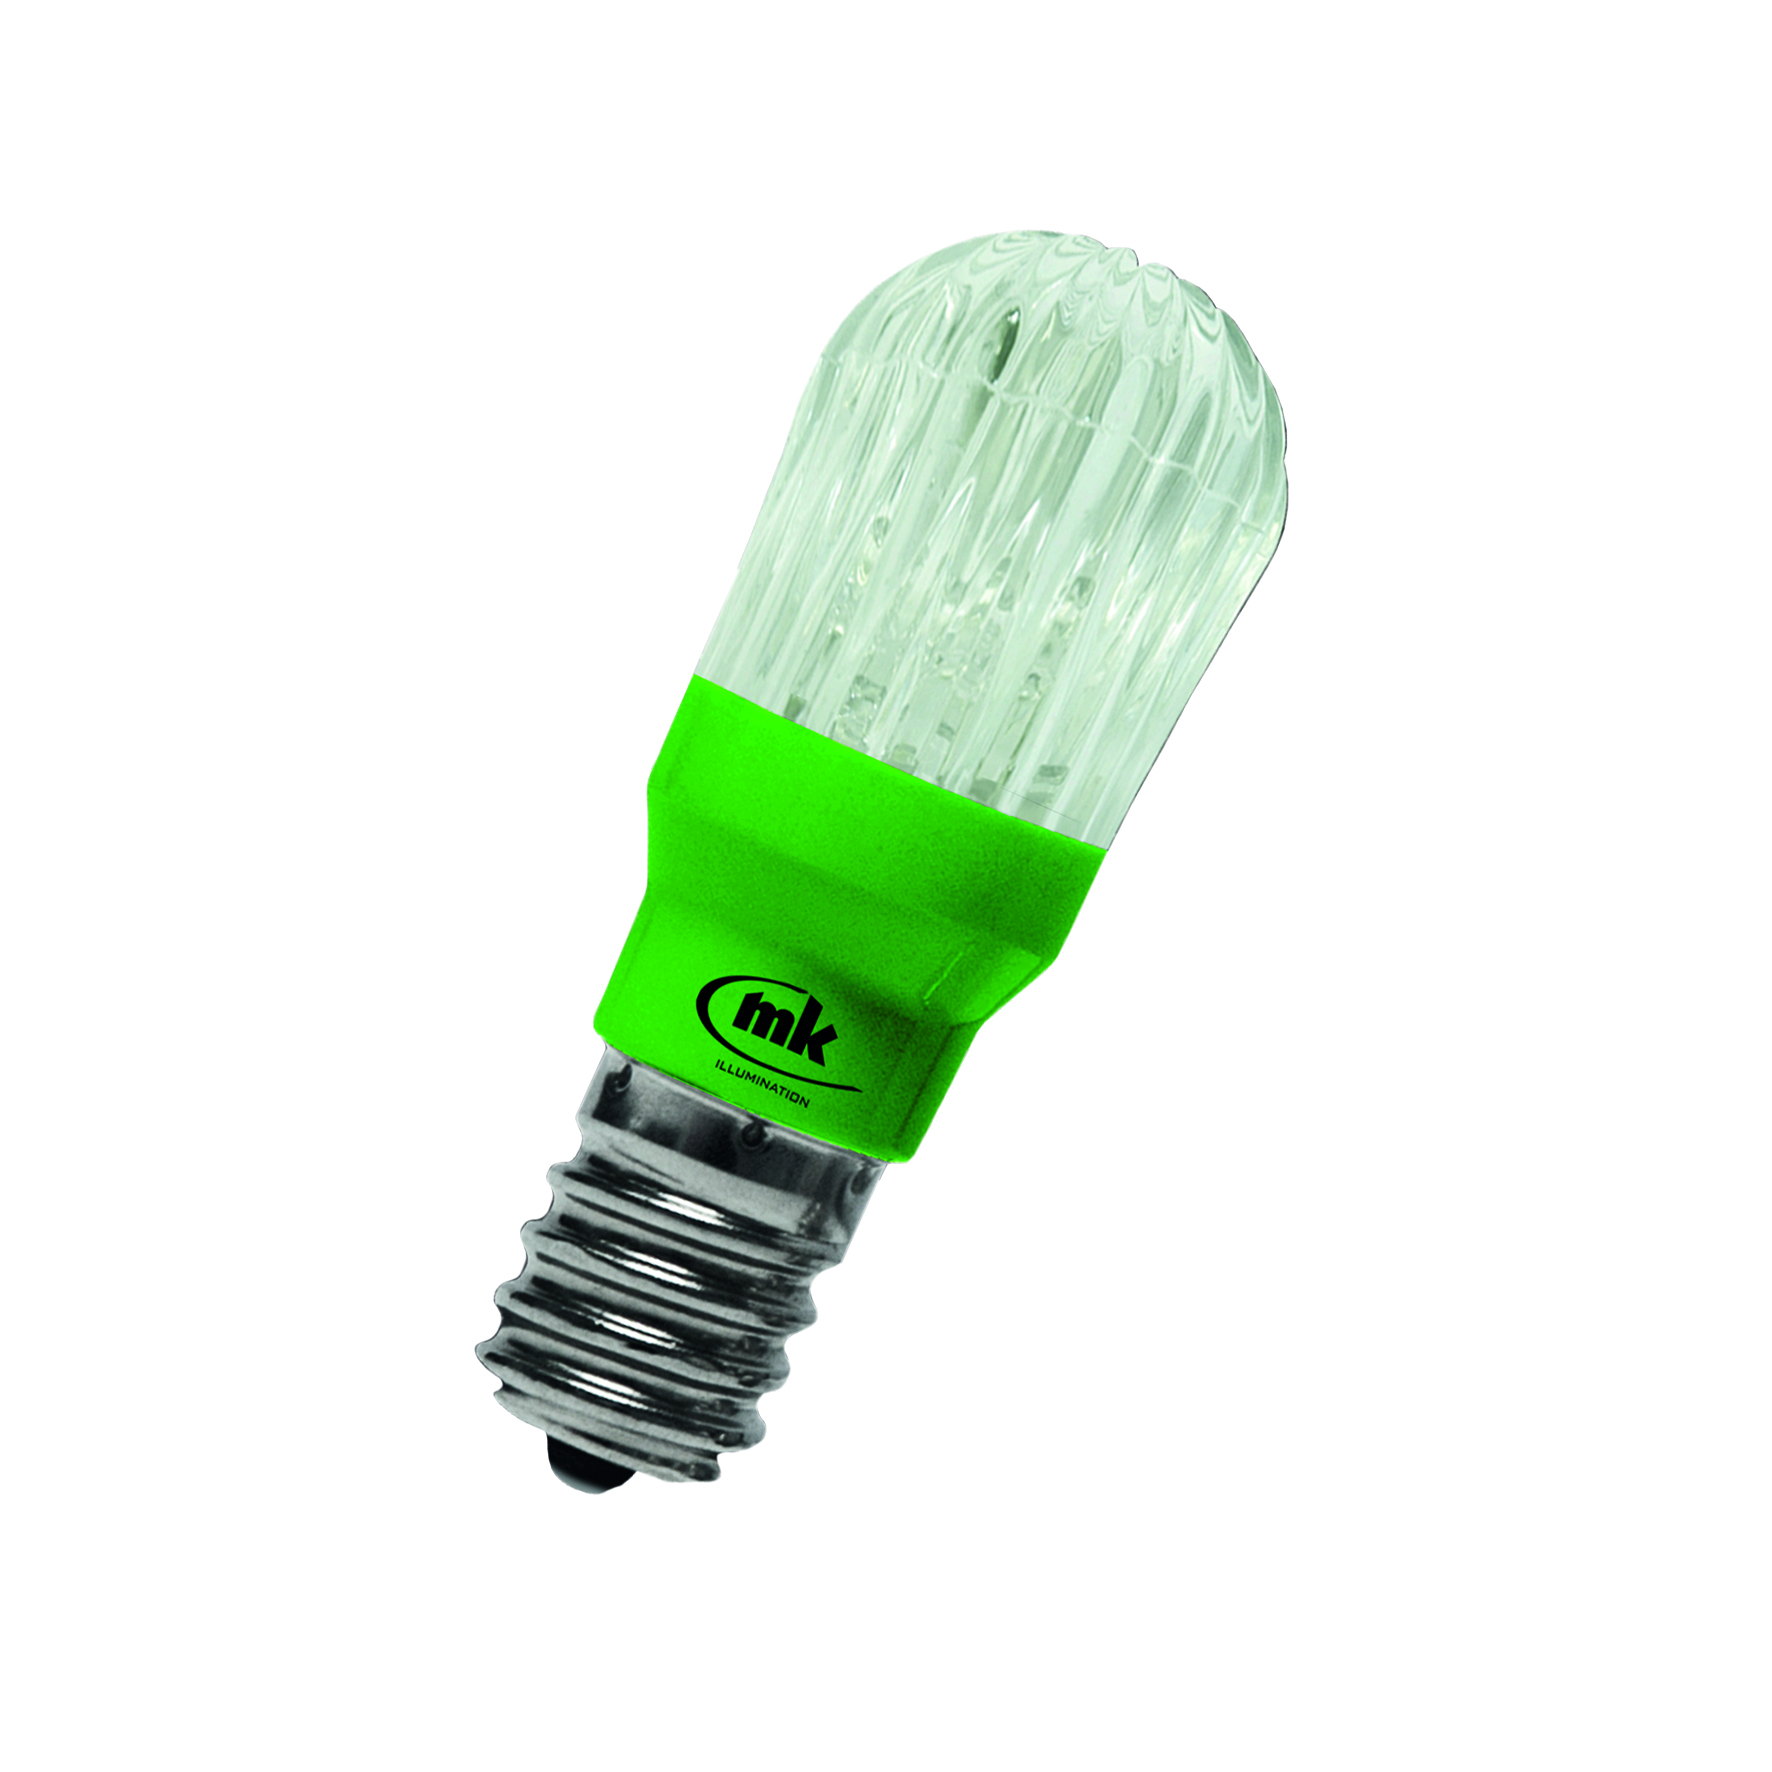 014-447 Prisma Bulb E14 12V 0.5W 6lm Green